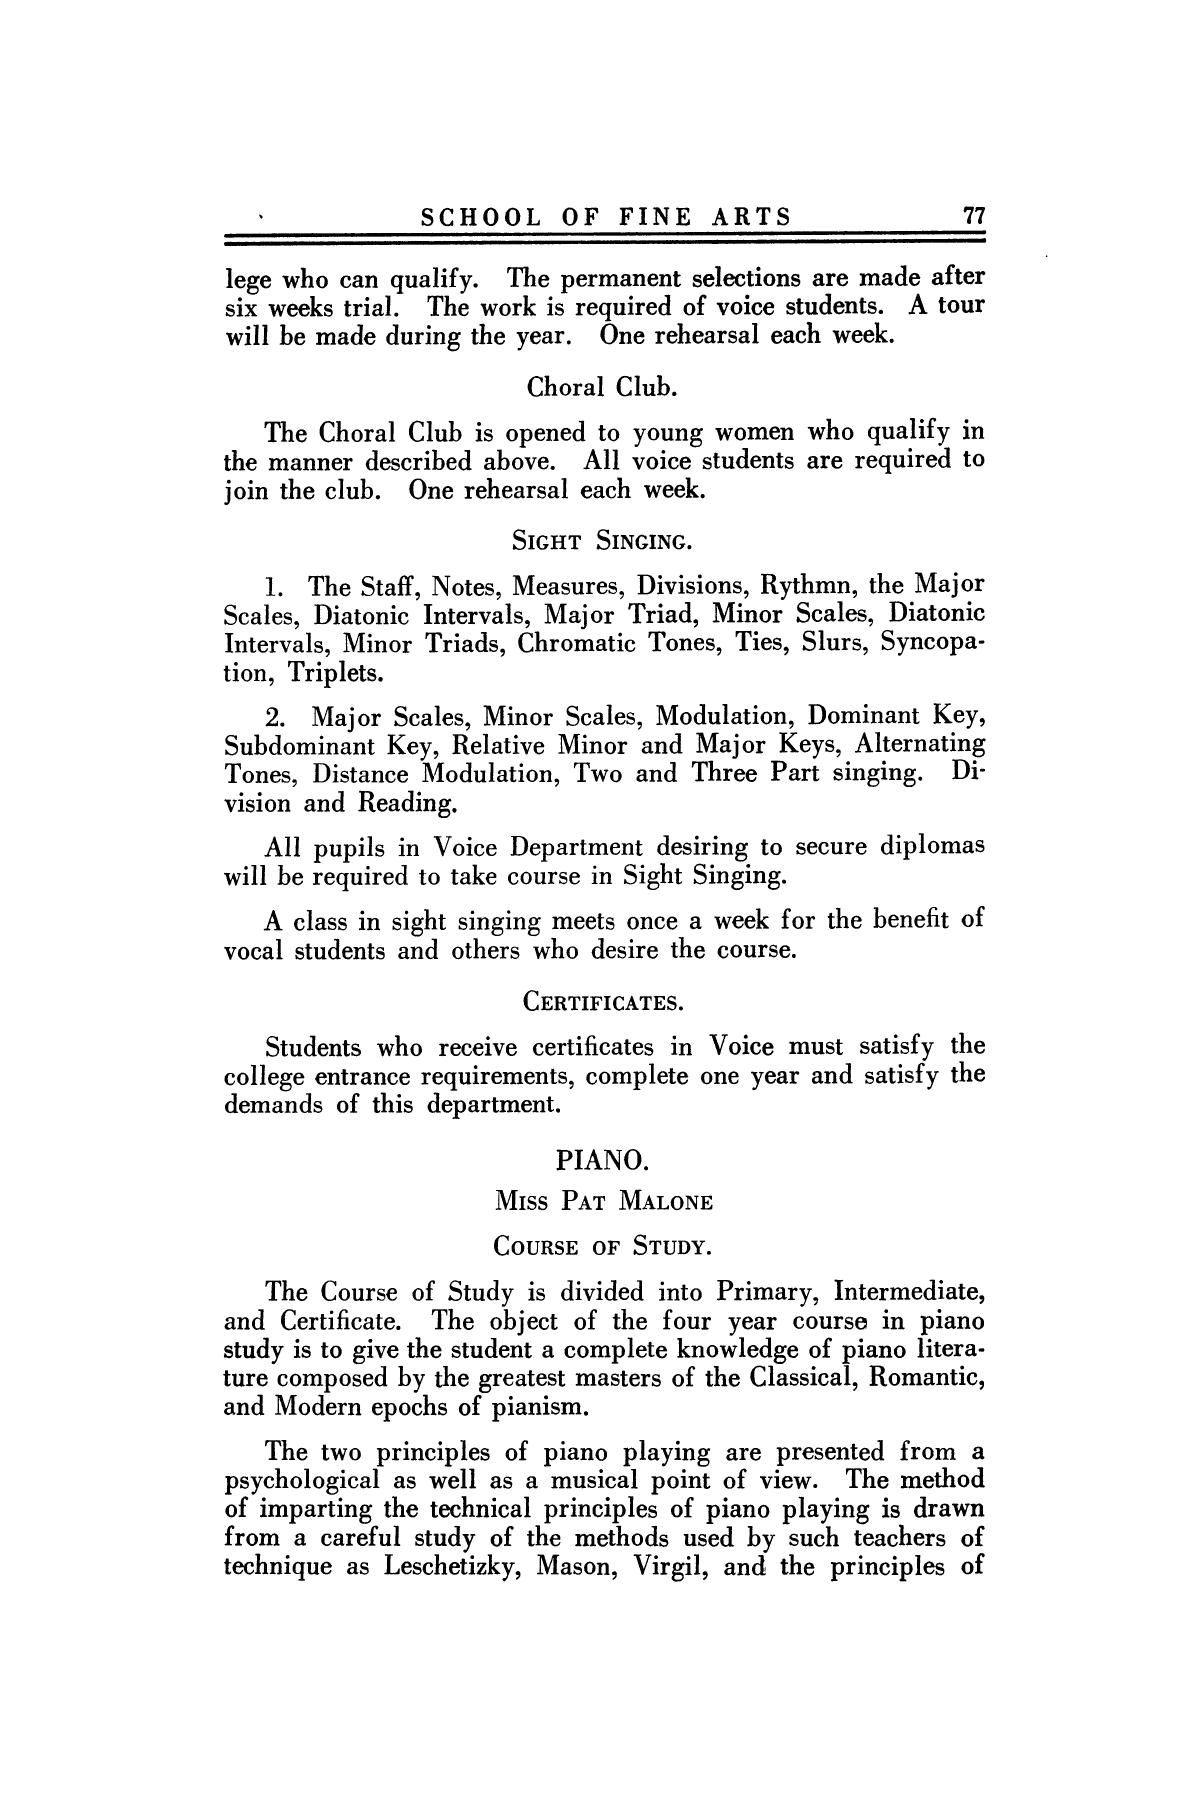 Catalog of Abilene Christian College, 1924-1925
                                                
                                                    77
                                                